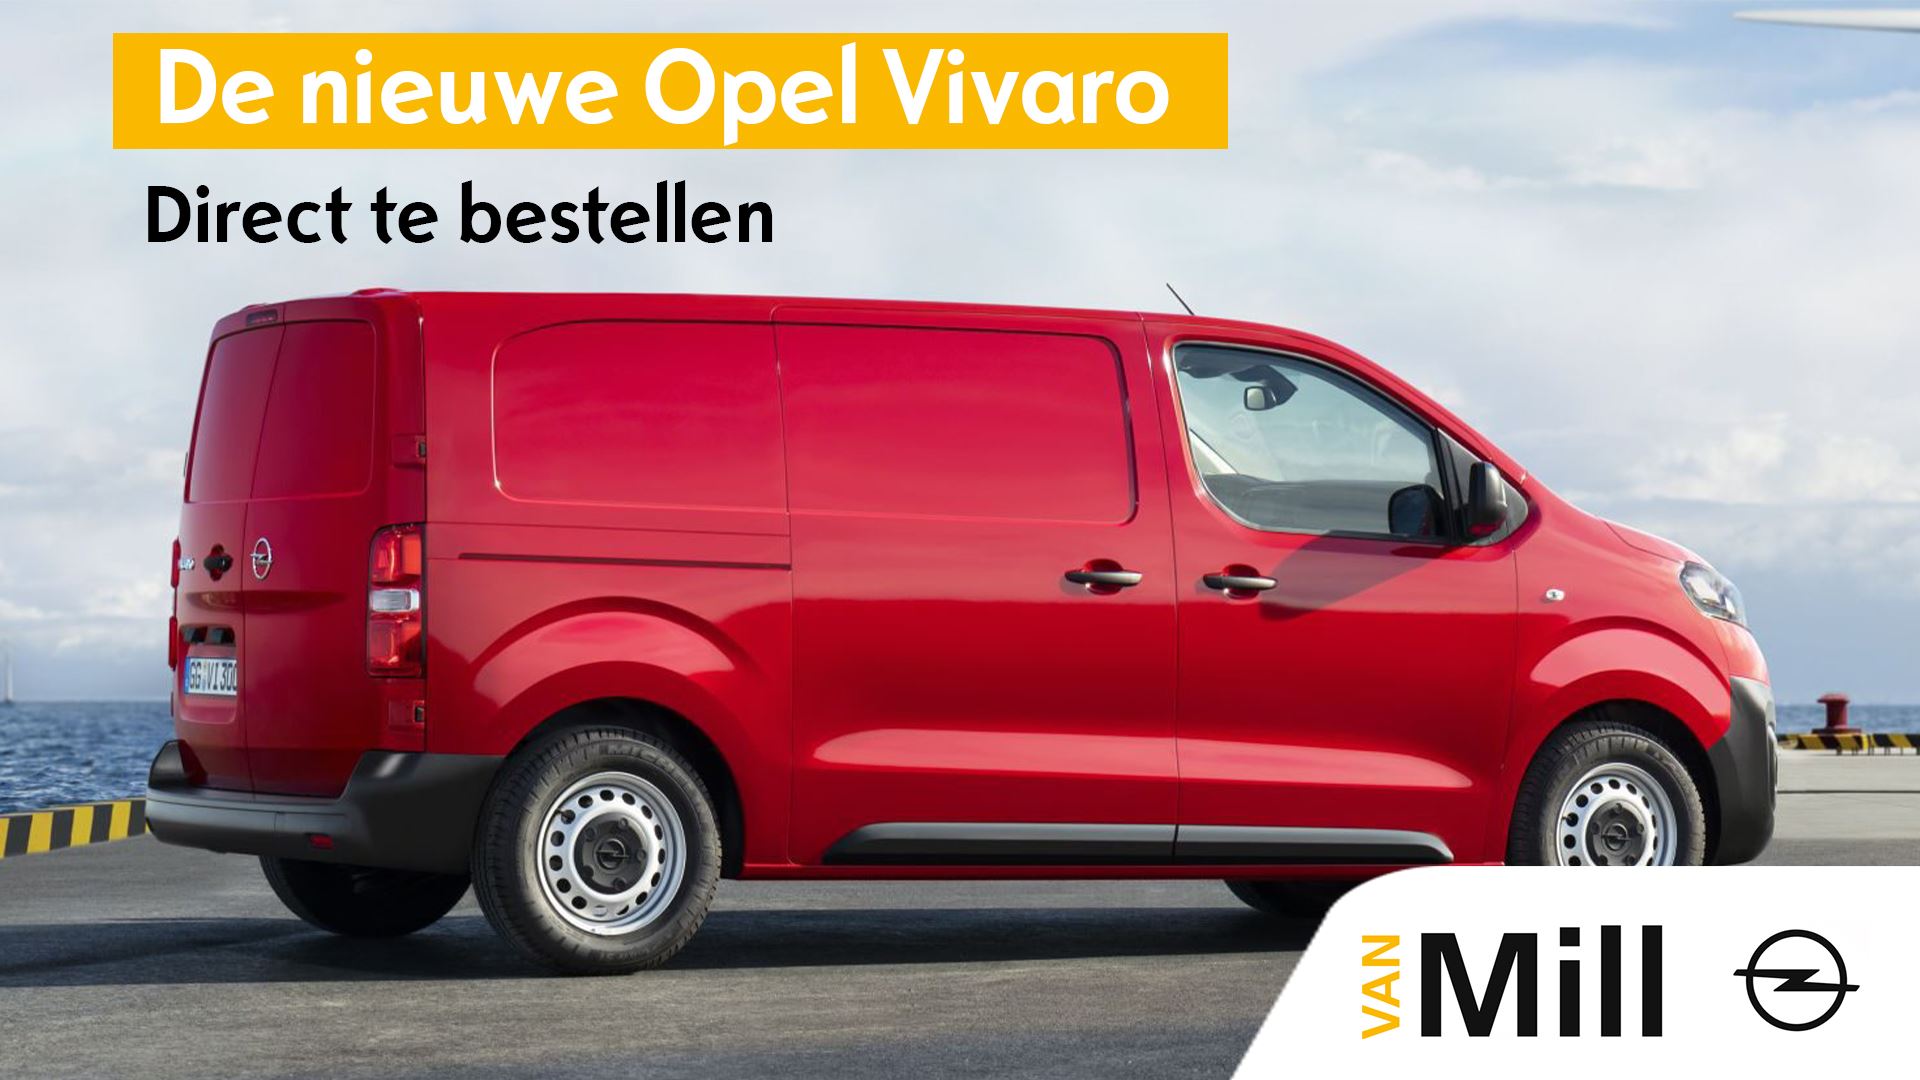 De nieuwe Opel Vivaro 